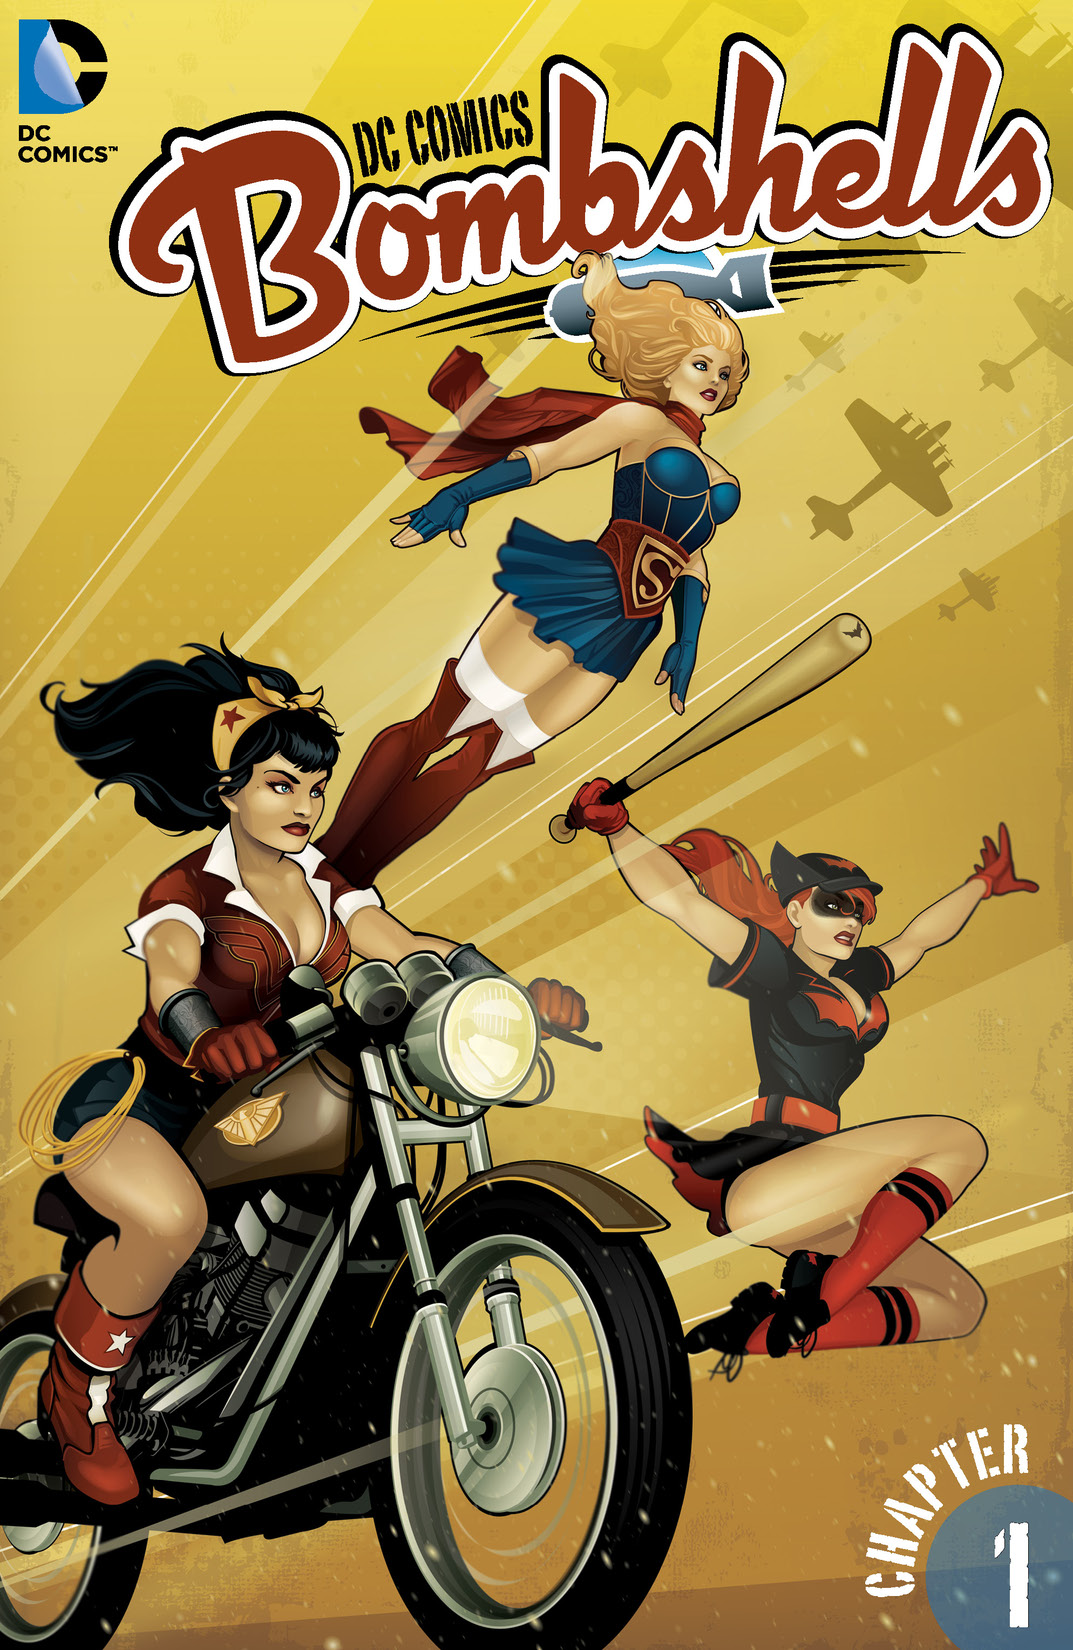 DC Comics: Bombshells #1 preview images